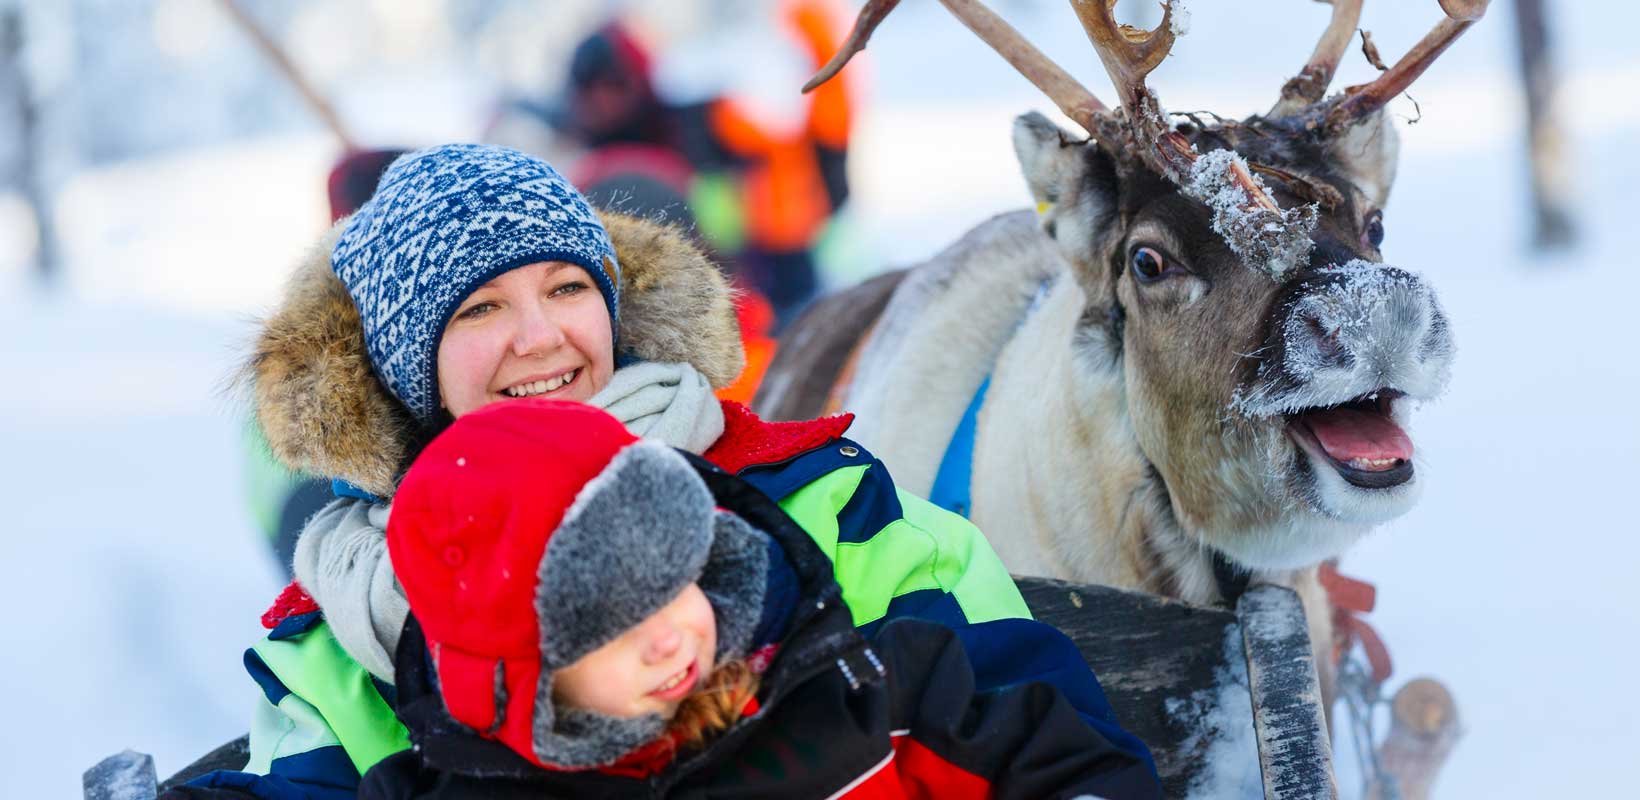 Smiling reindeer